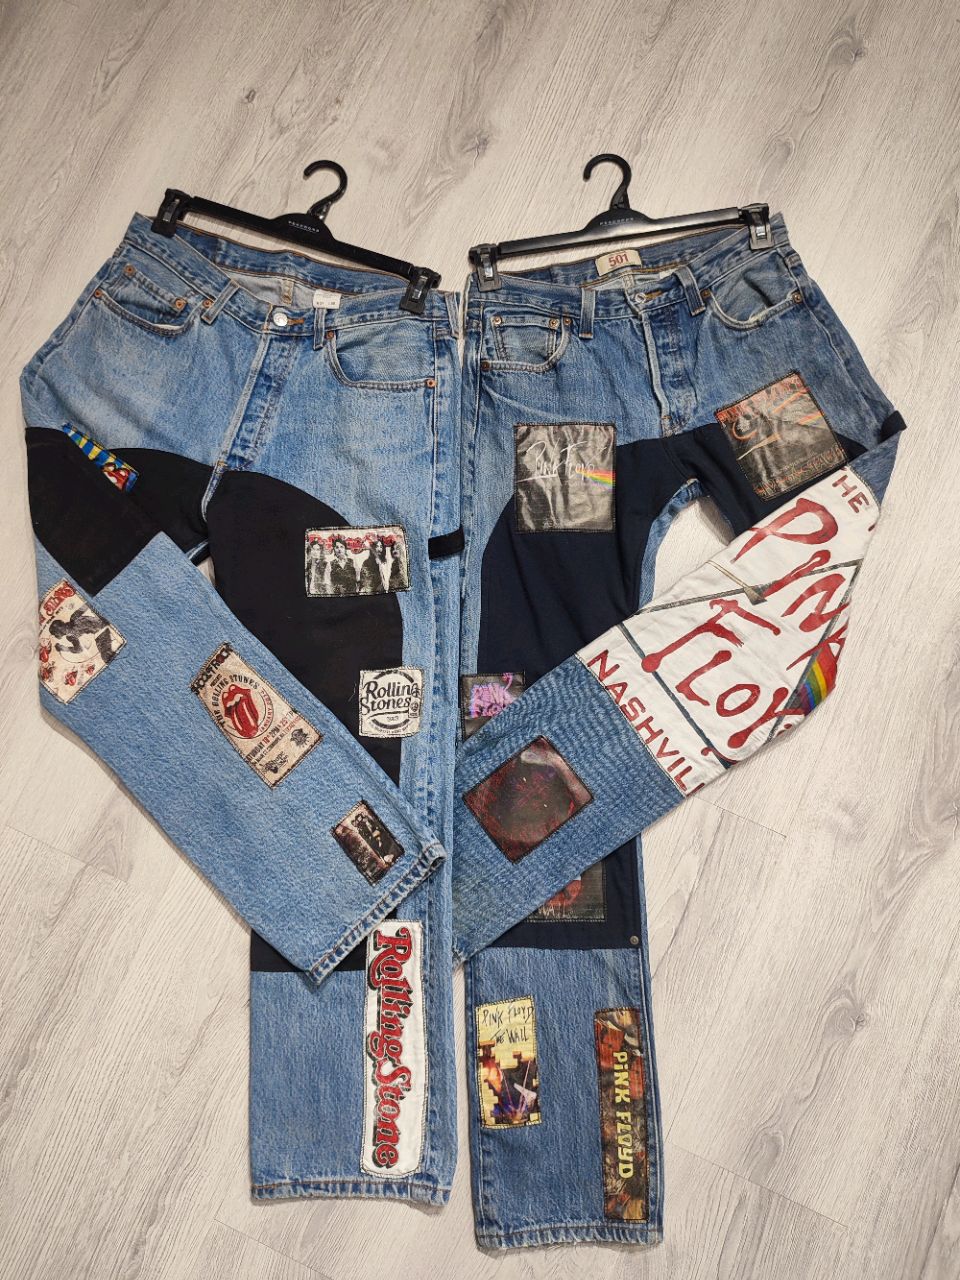 Levi's music patchwork jeans - 50 pieces